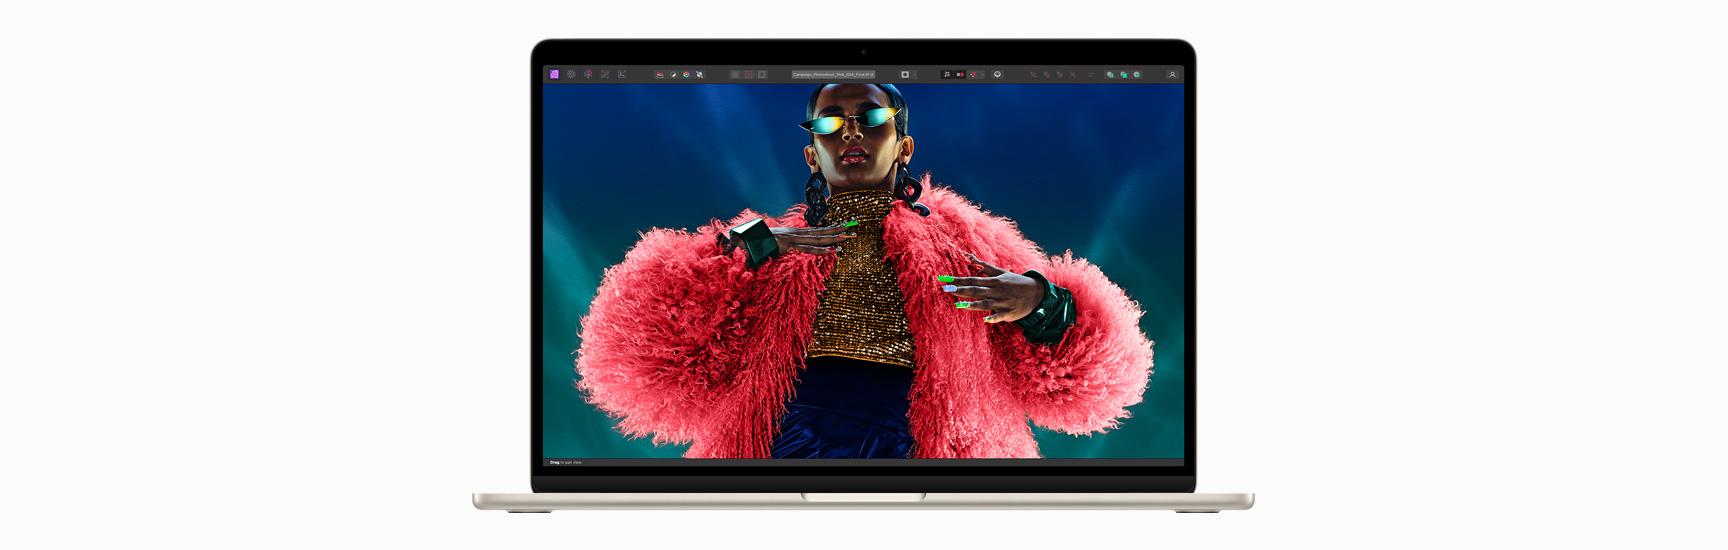 Mặt trước của MacBook Air thể hiện màn hình Liquid Retina.